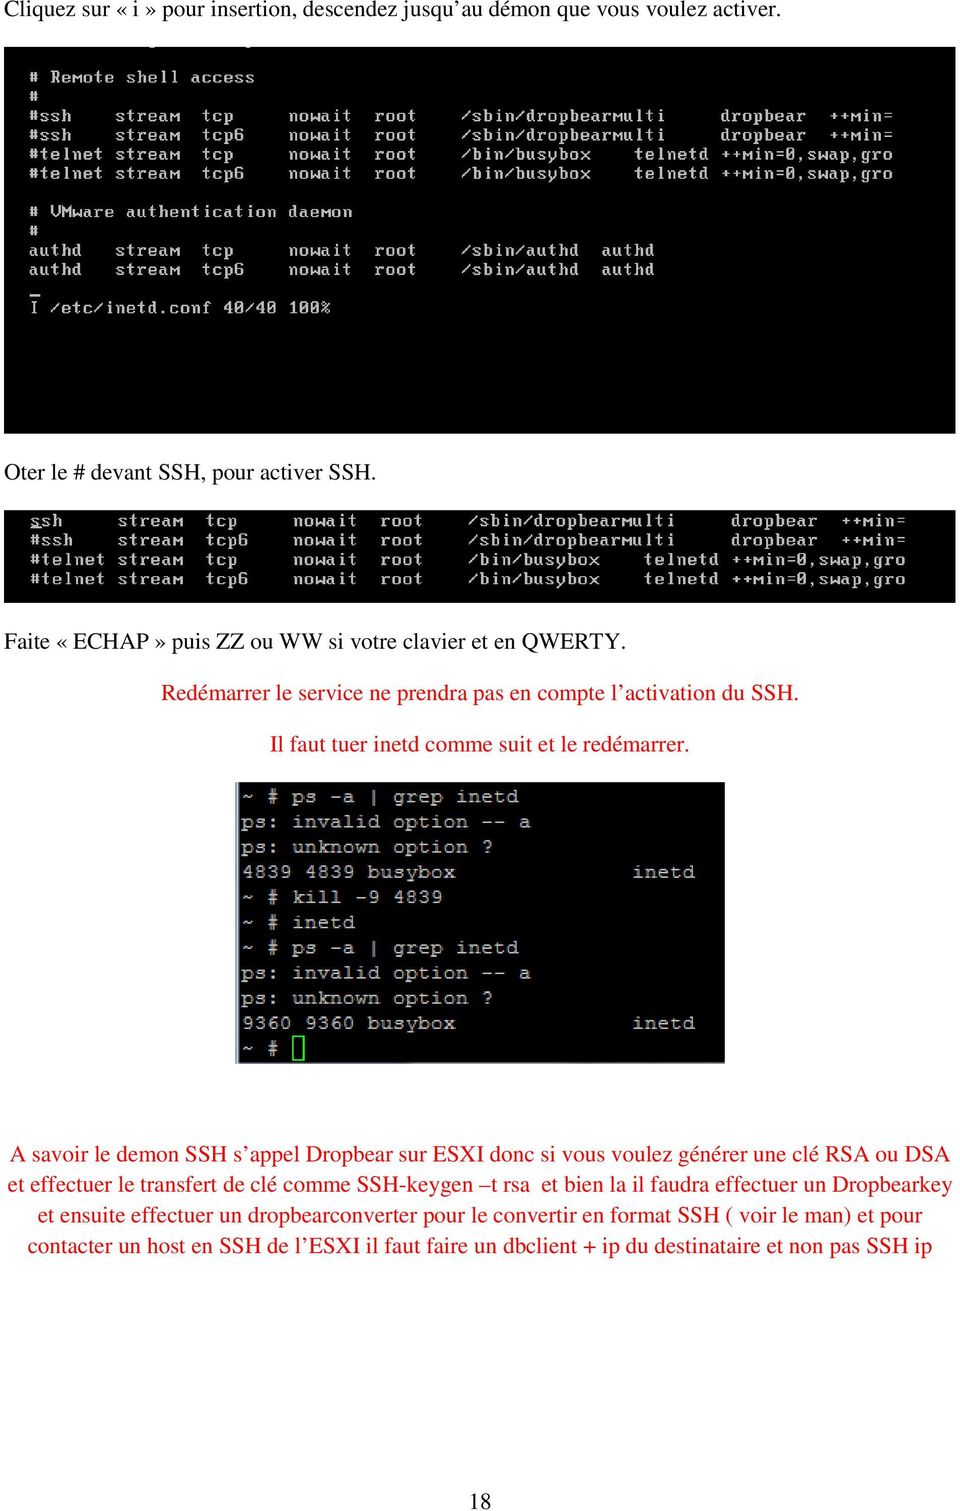 A savoir le demon SSH s appel Dropbear sur ESXI donc si vous voulez générer une clé RSA ou DSA et effectuer le transfert de clé comme SSH-keygen t rsa et bien la il faudra